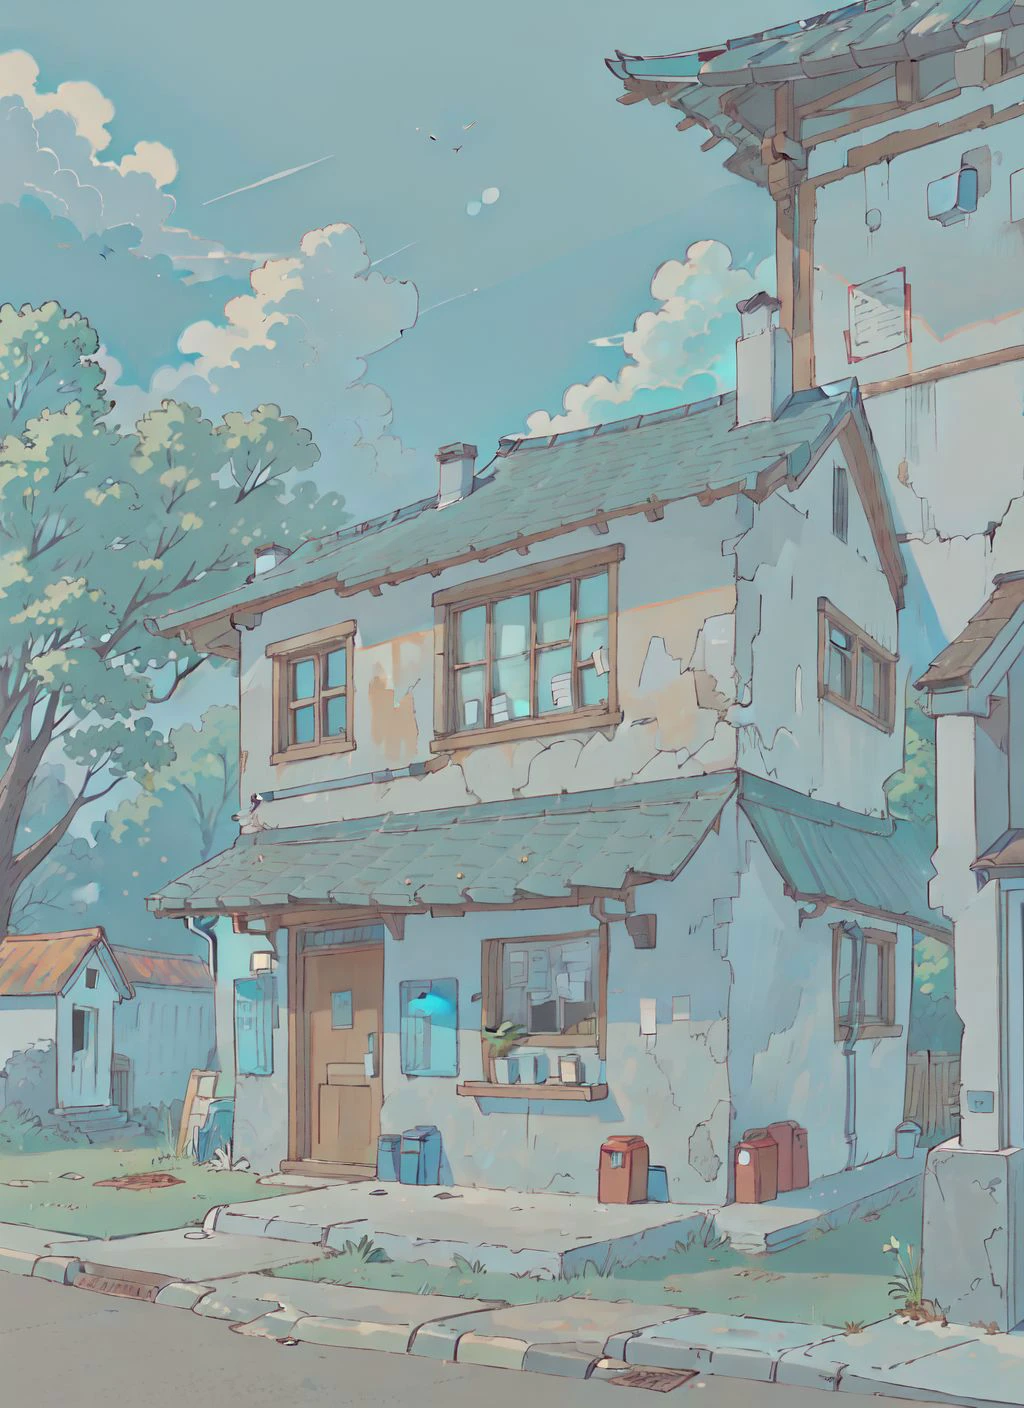 (melhor qualidade:0.8), (melhor qualidade:0.8), (((sem humanos))), ilustração de anime perfeita introspectiva quebrada, vista frontal, uma casa com uma pequena caixa de correio na frente 